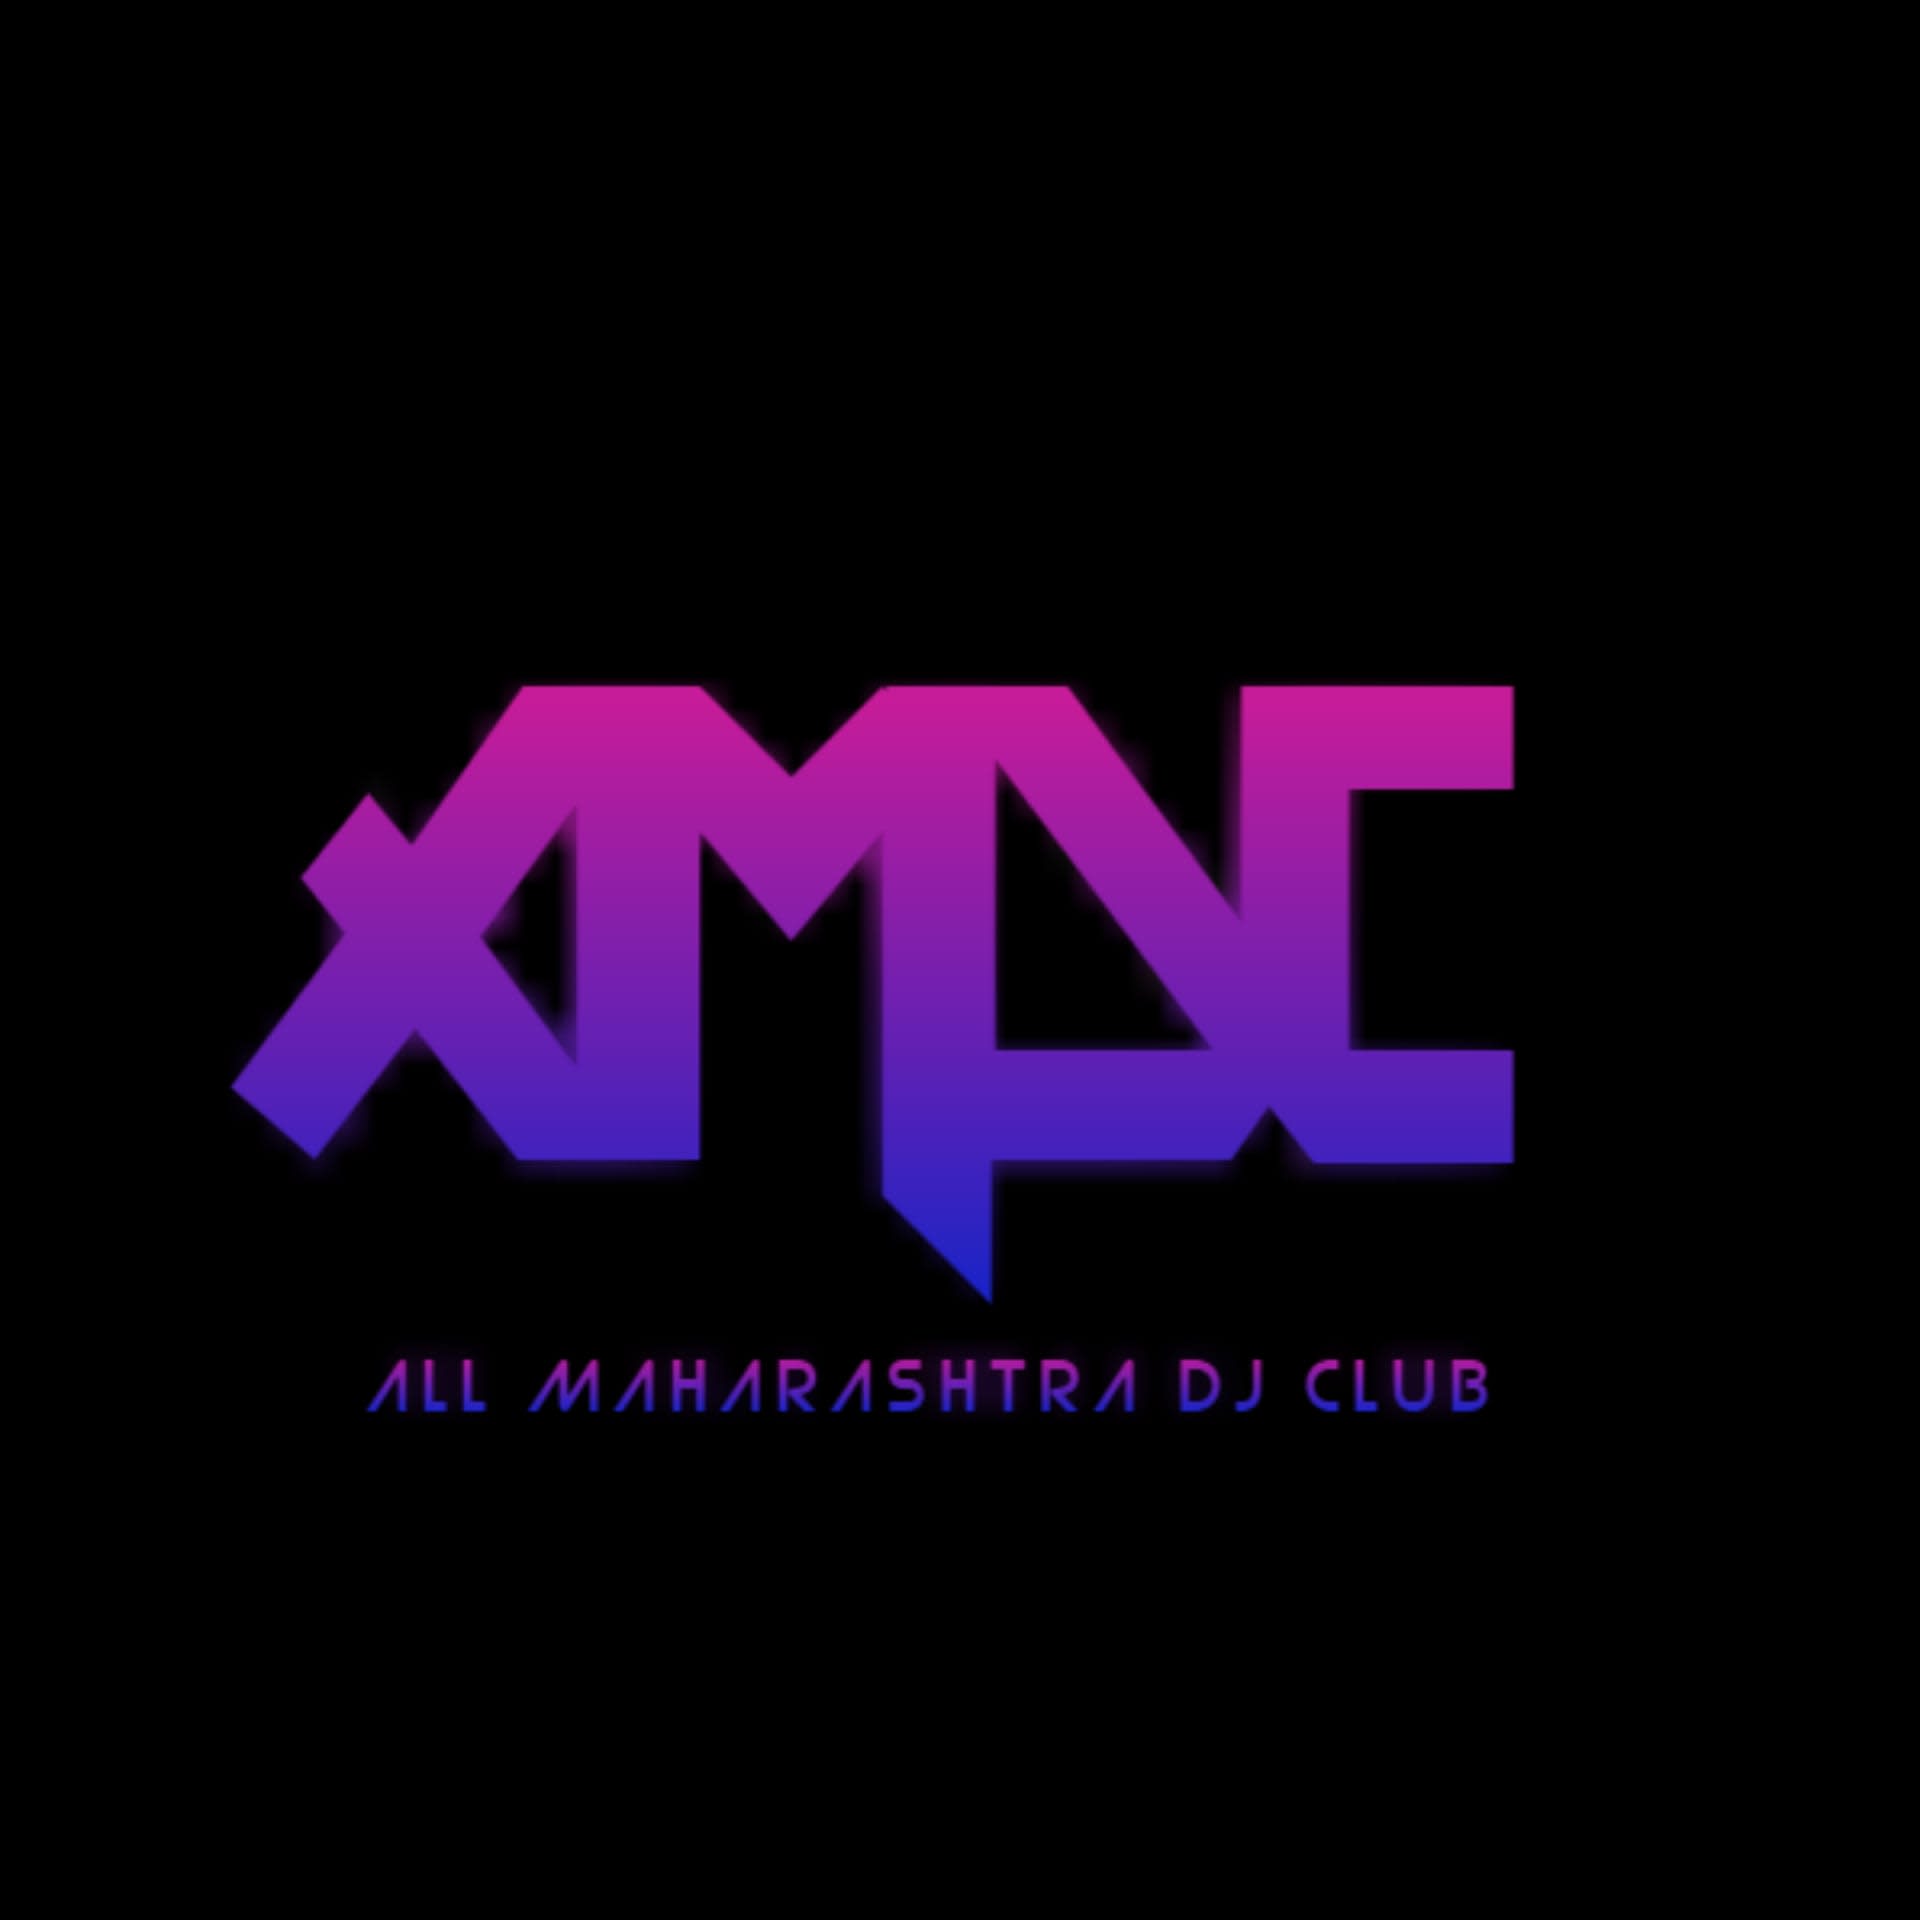 ALL MAHARASHTRA DJ'S CLUB